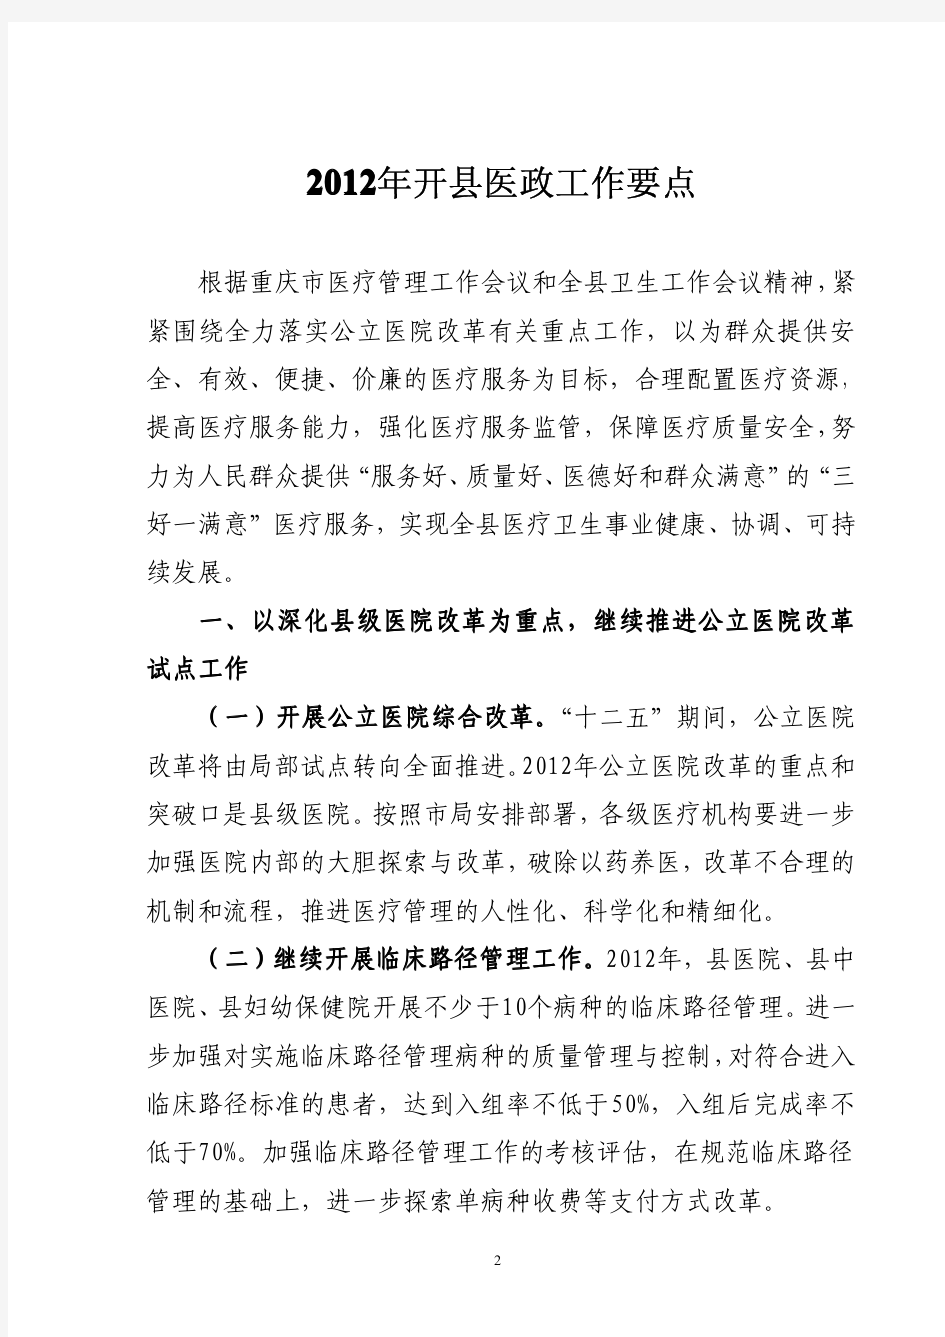 重庆市卫生局电子公文-发印日 21 月3年2102 室公办局